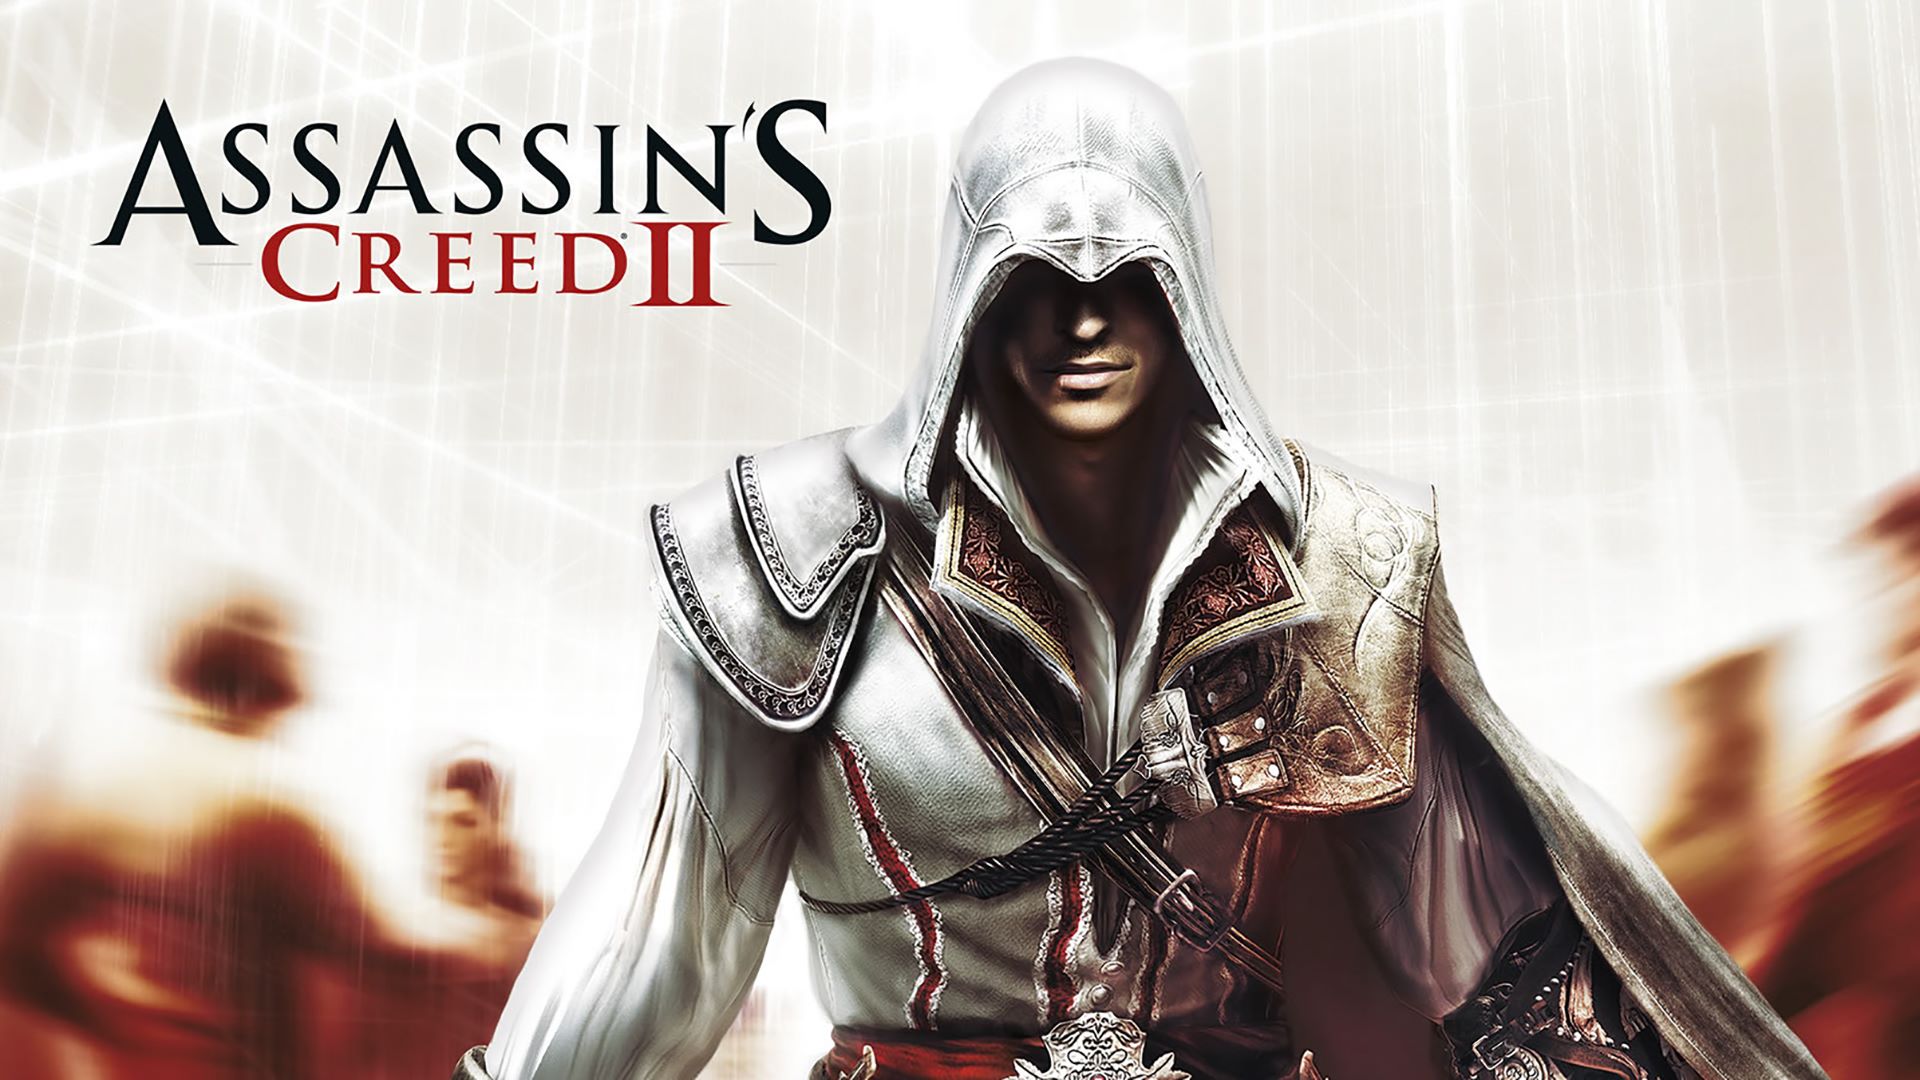 RÃ©sultat de recherche d'images pour "Assassin's Creed 2"